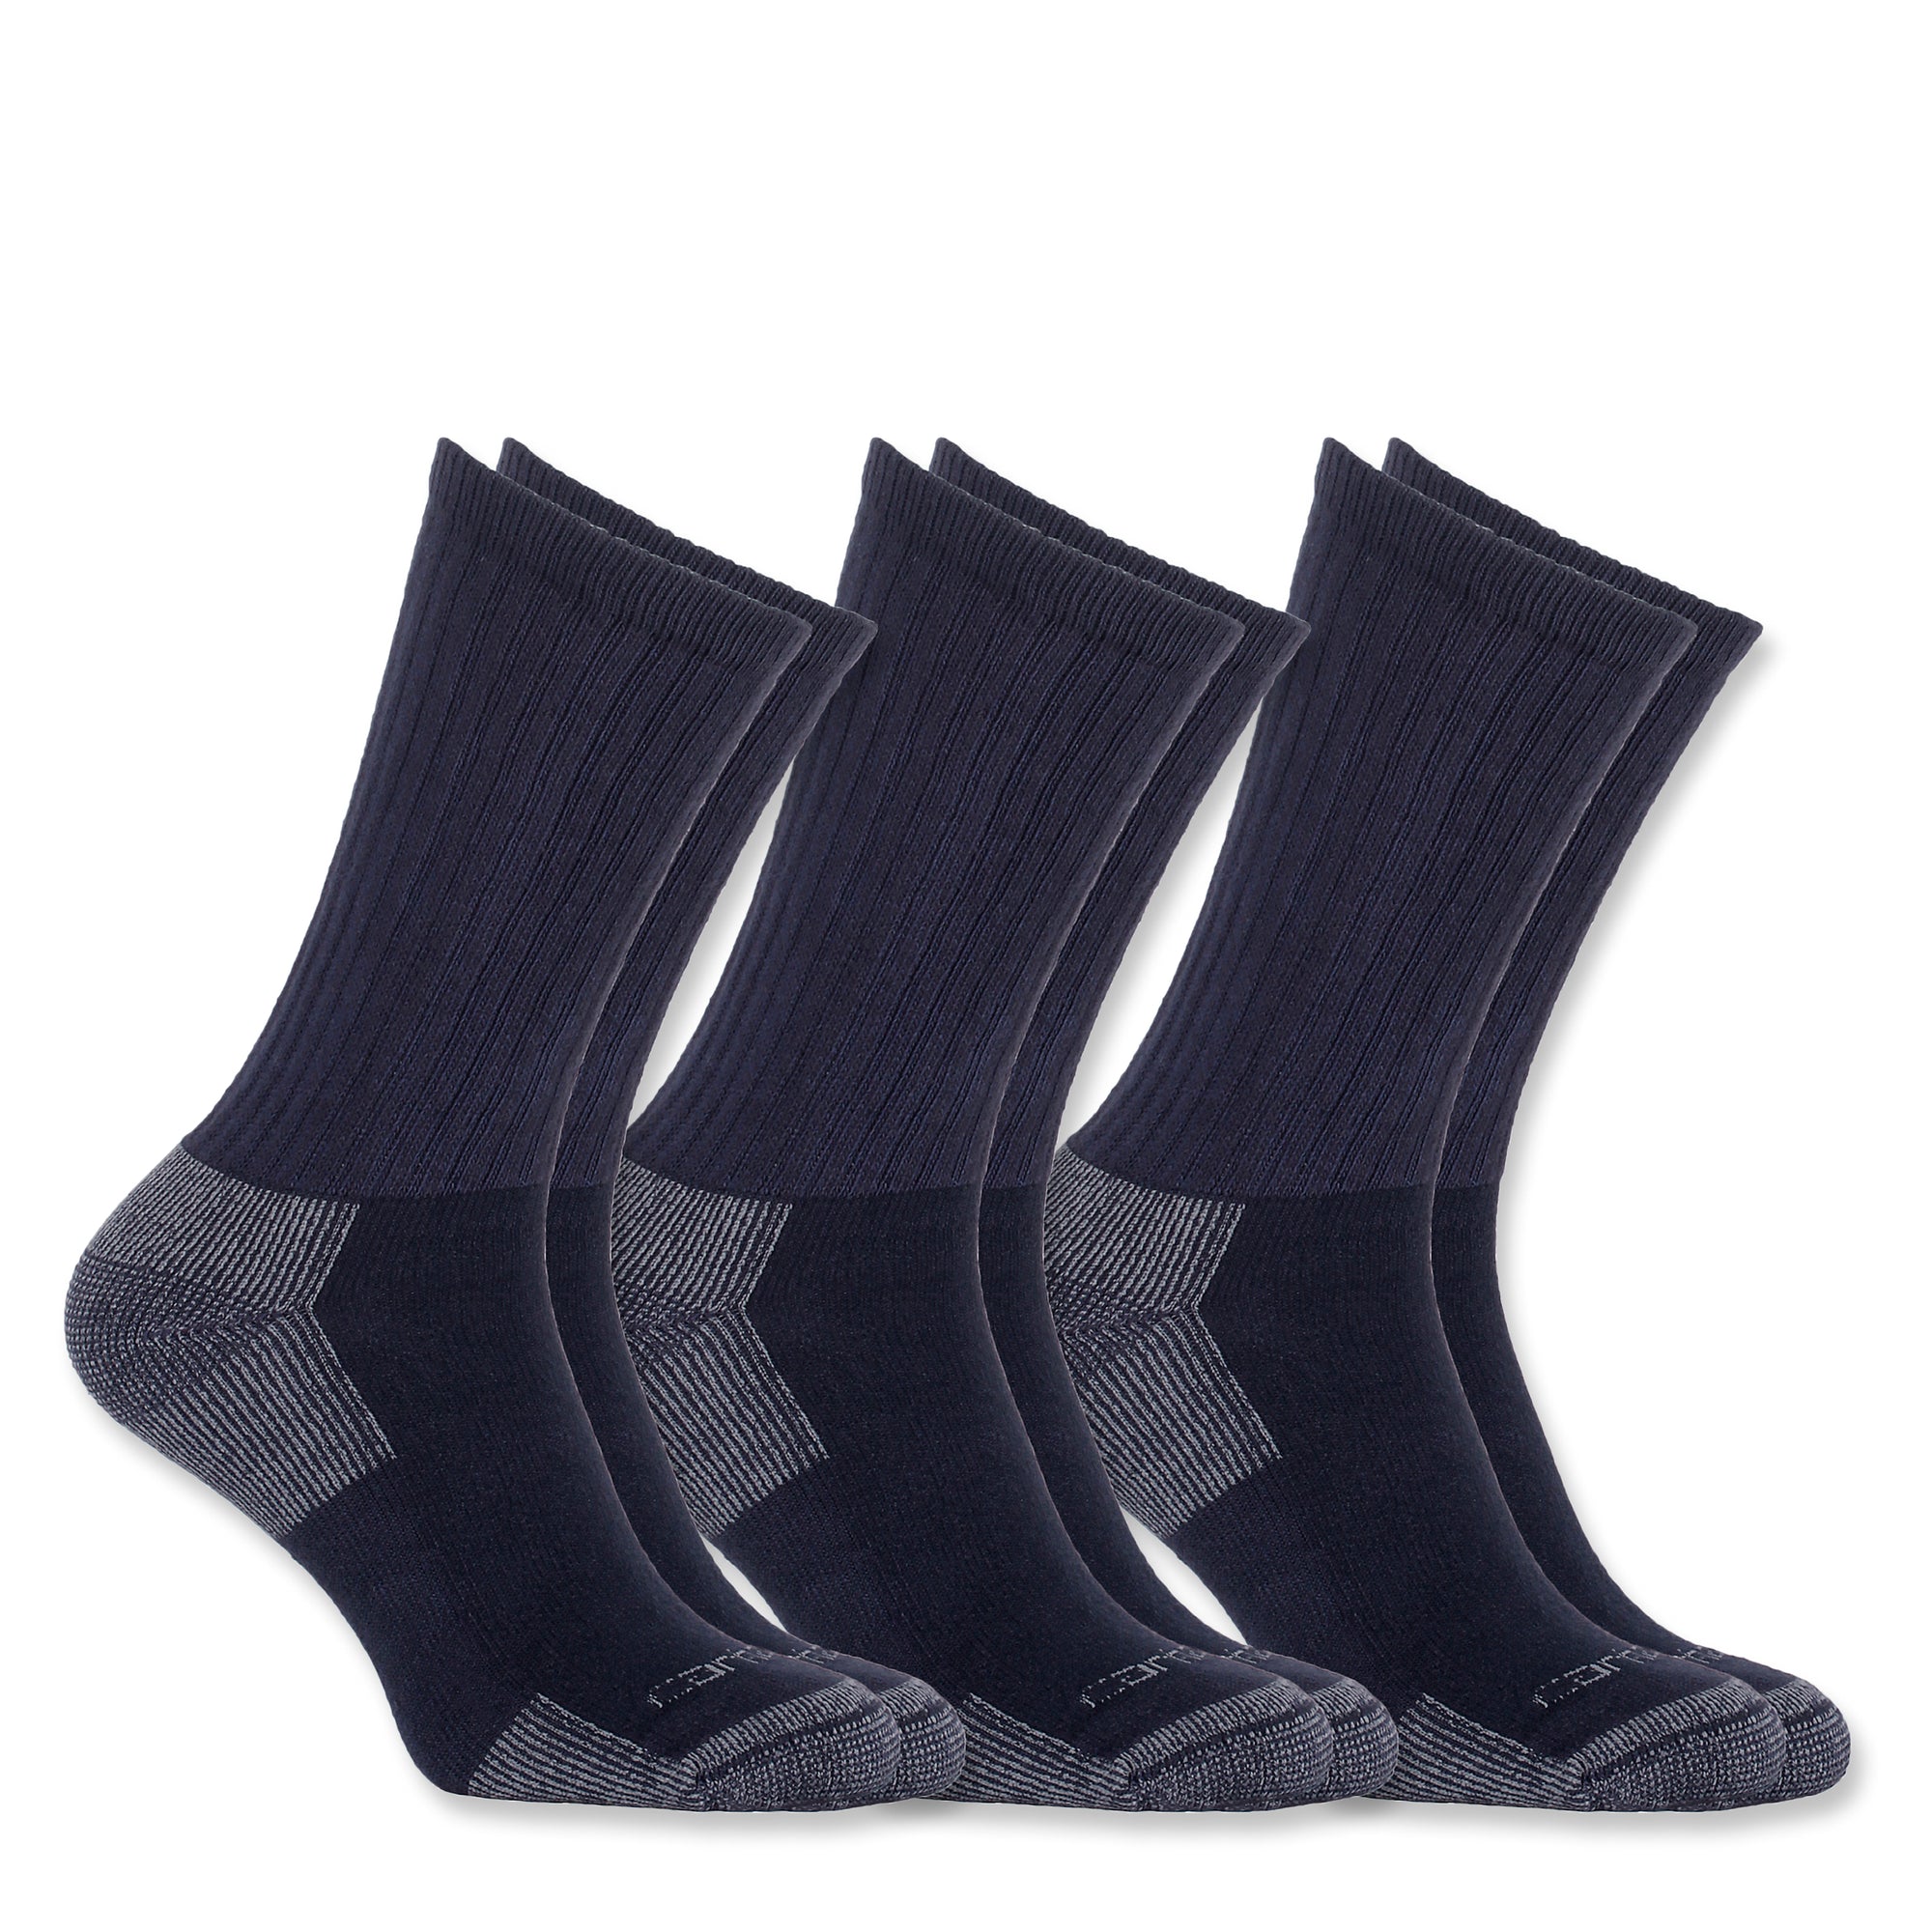 Carhartt All Season Crew Socks miesten sukat, tummansininen